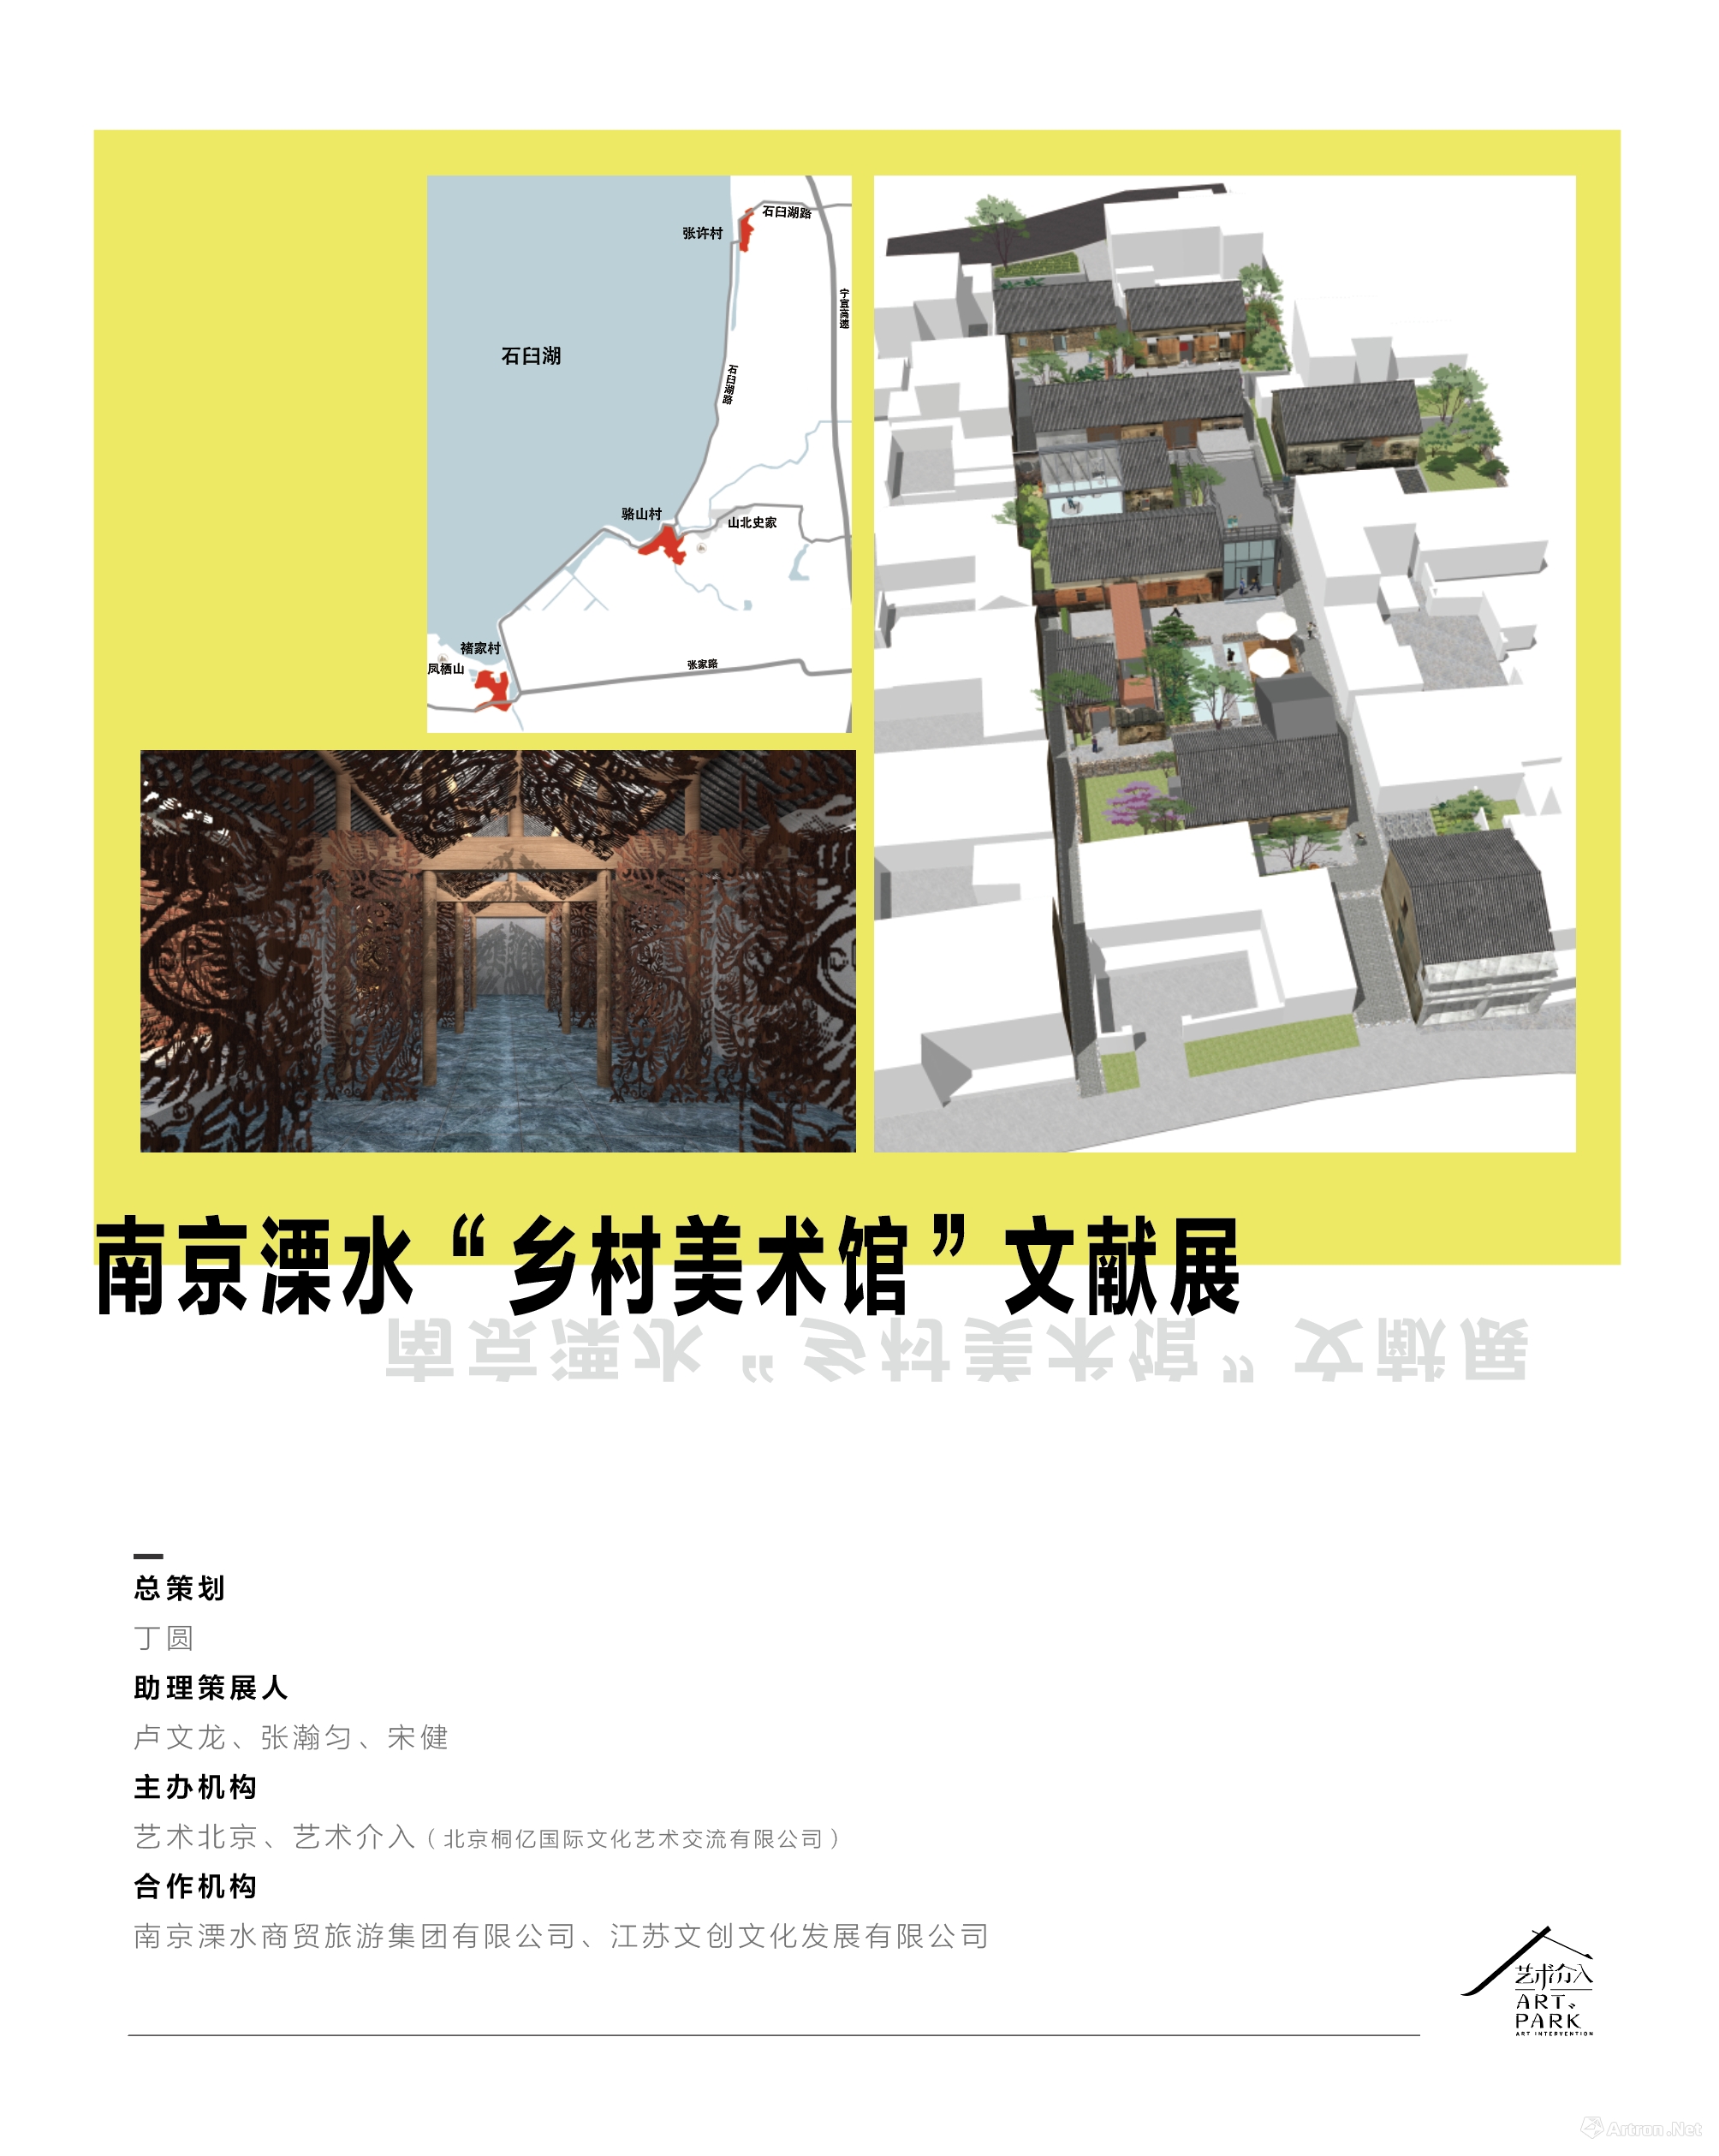 艺术北京 | ART PARK“艺术介入·城市升级”抢先看！